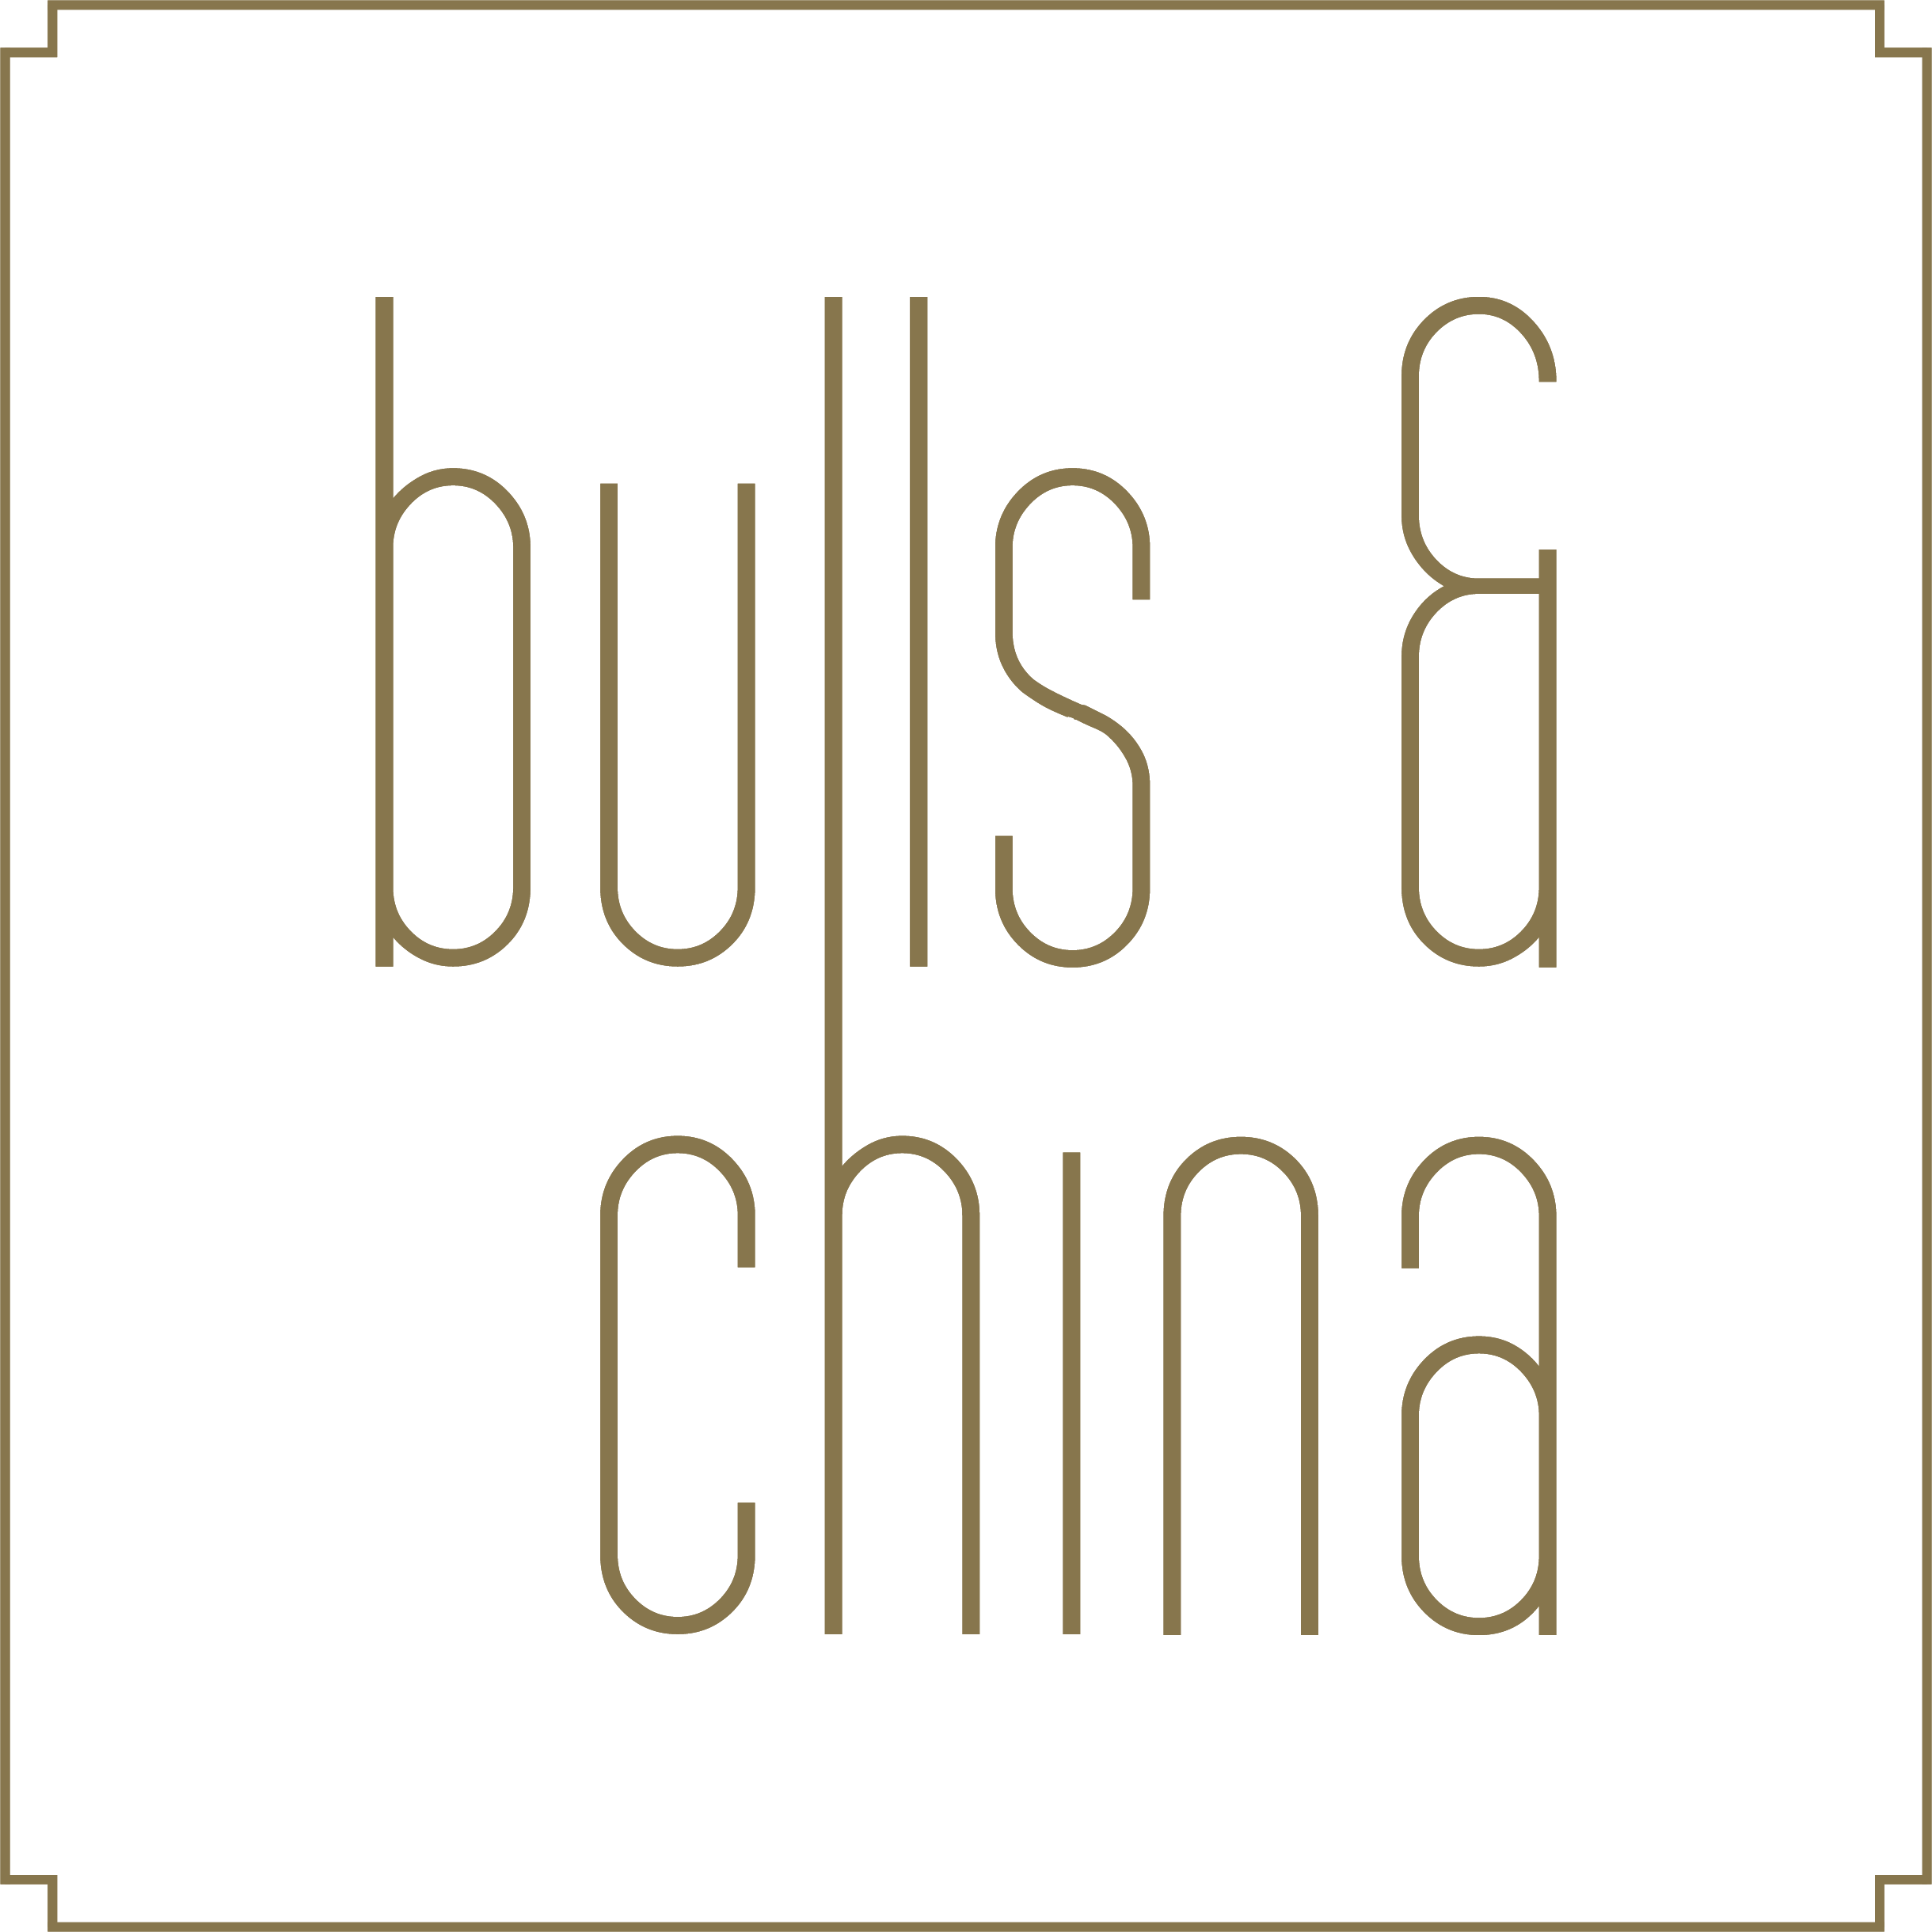 Bulls and China